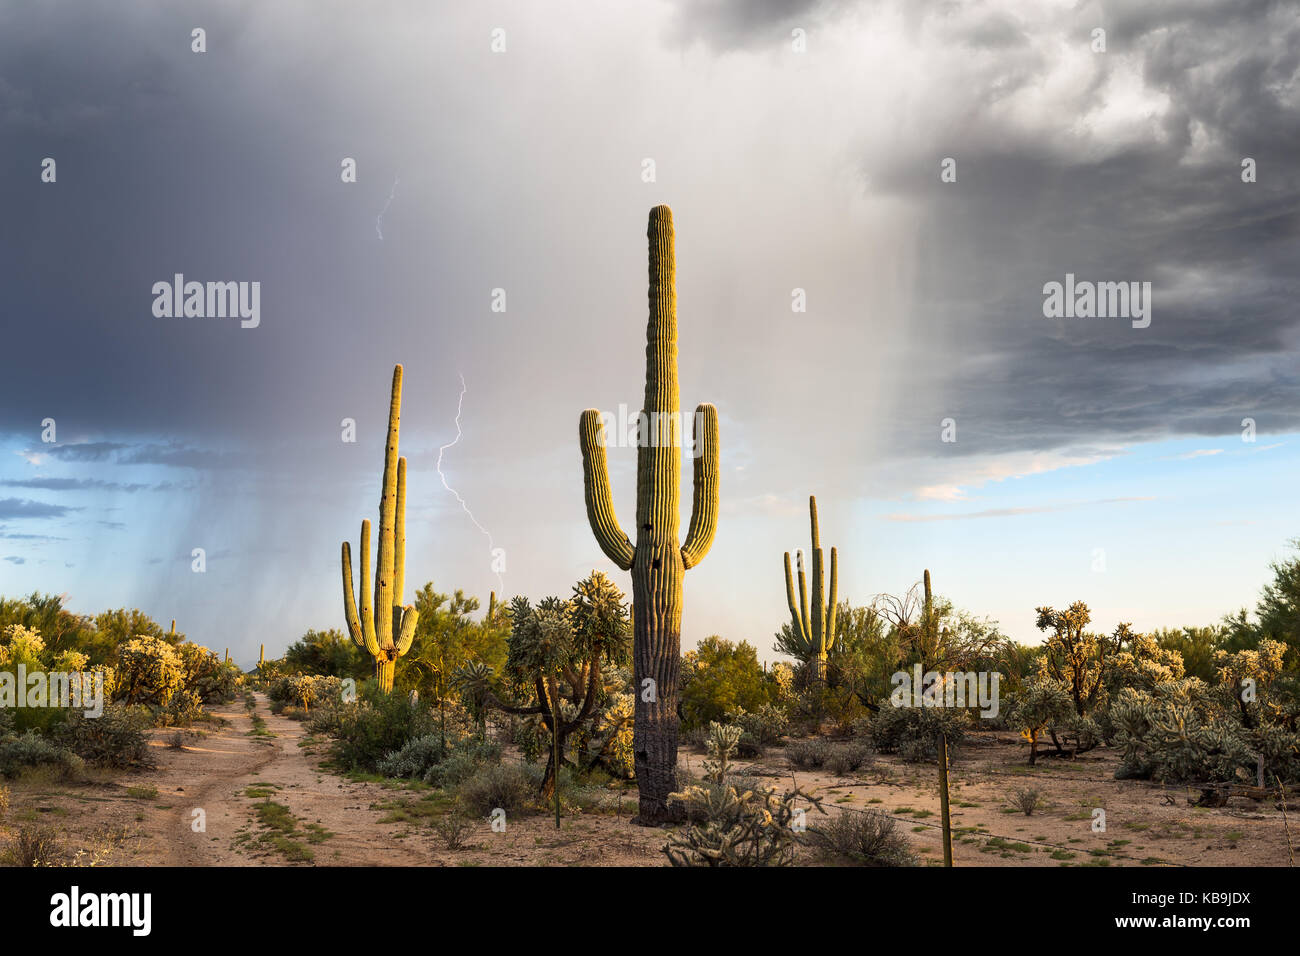 Landschaftlich reizvolle Landschaft der Sonoran-Wüste mit Saguaro-Kaktus und Regen, der von einem Monsunsturm in der Nähe von Marana, Arizona, fällt Stockfoto